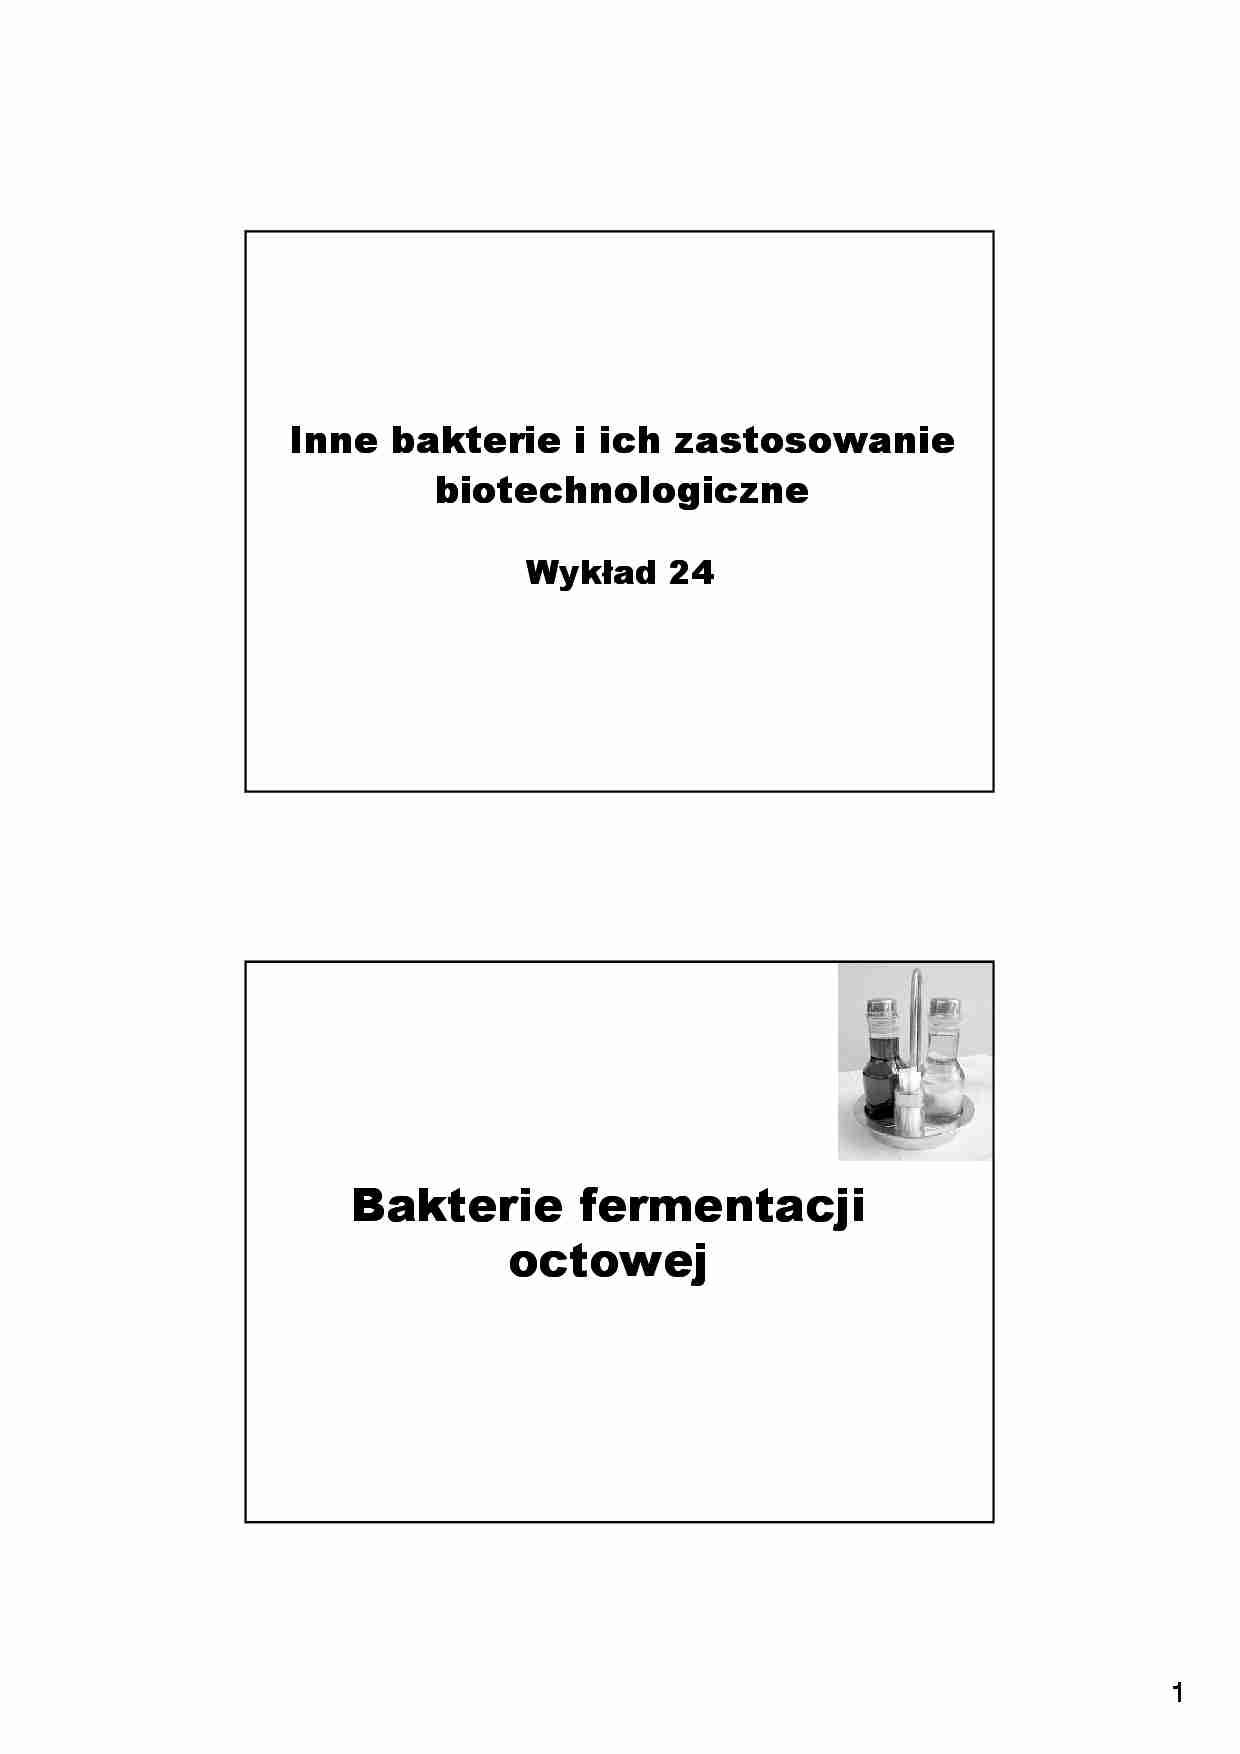 Inne bakterie i ich zastosowanie biotechnologiczne- wykład 24 - strona 1